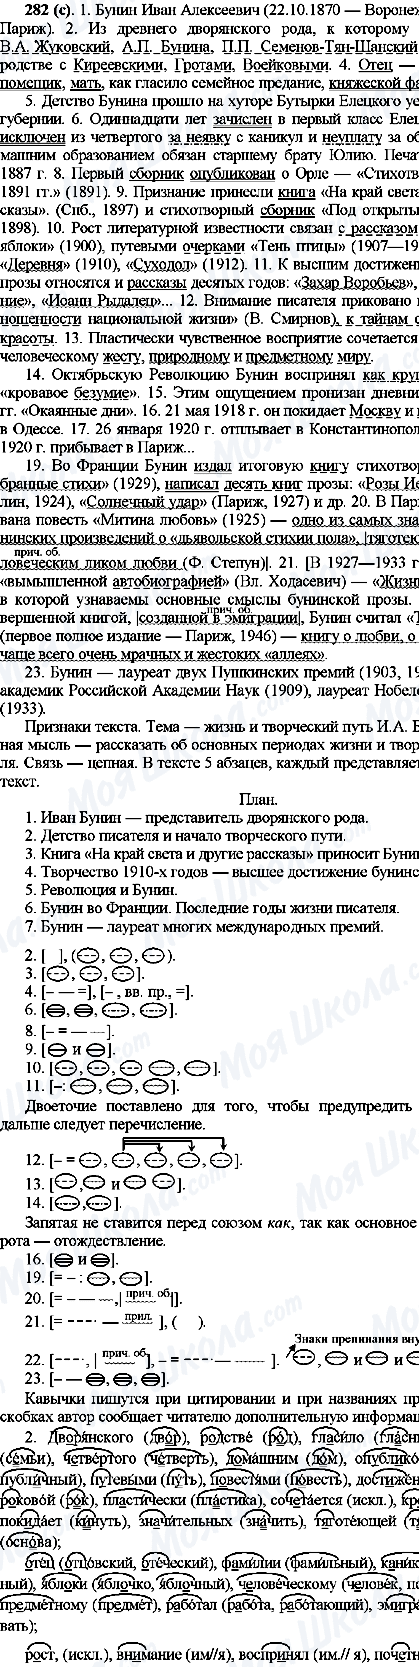 ГДЗ Русский язык 10 класс страница 282(с)